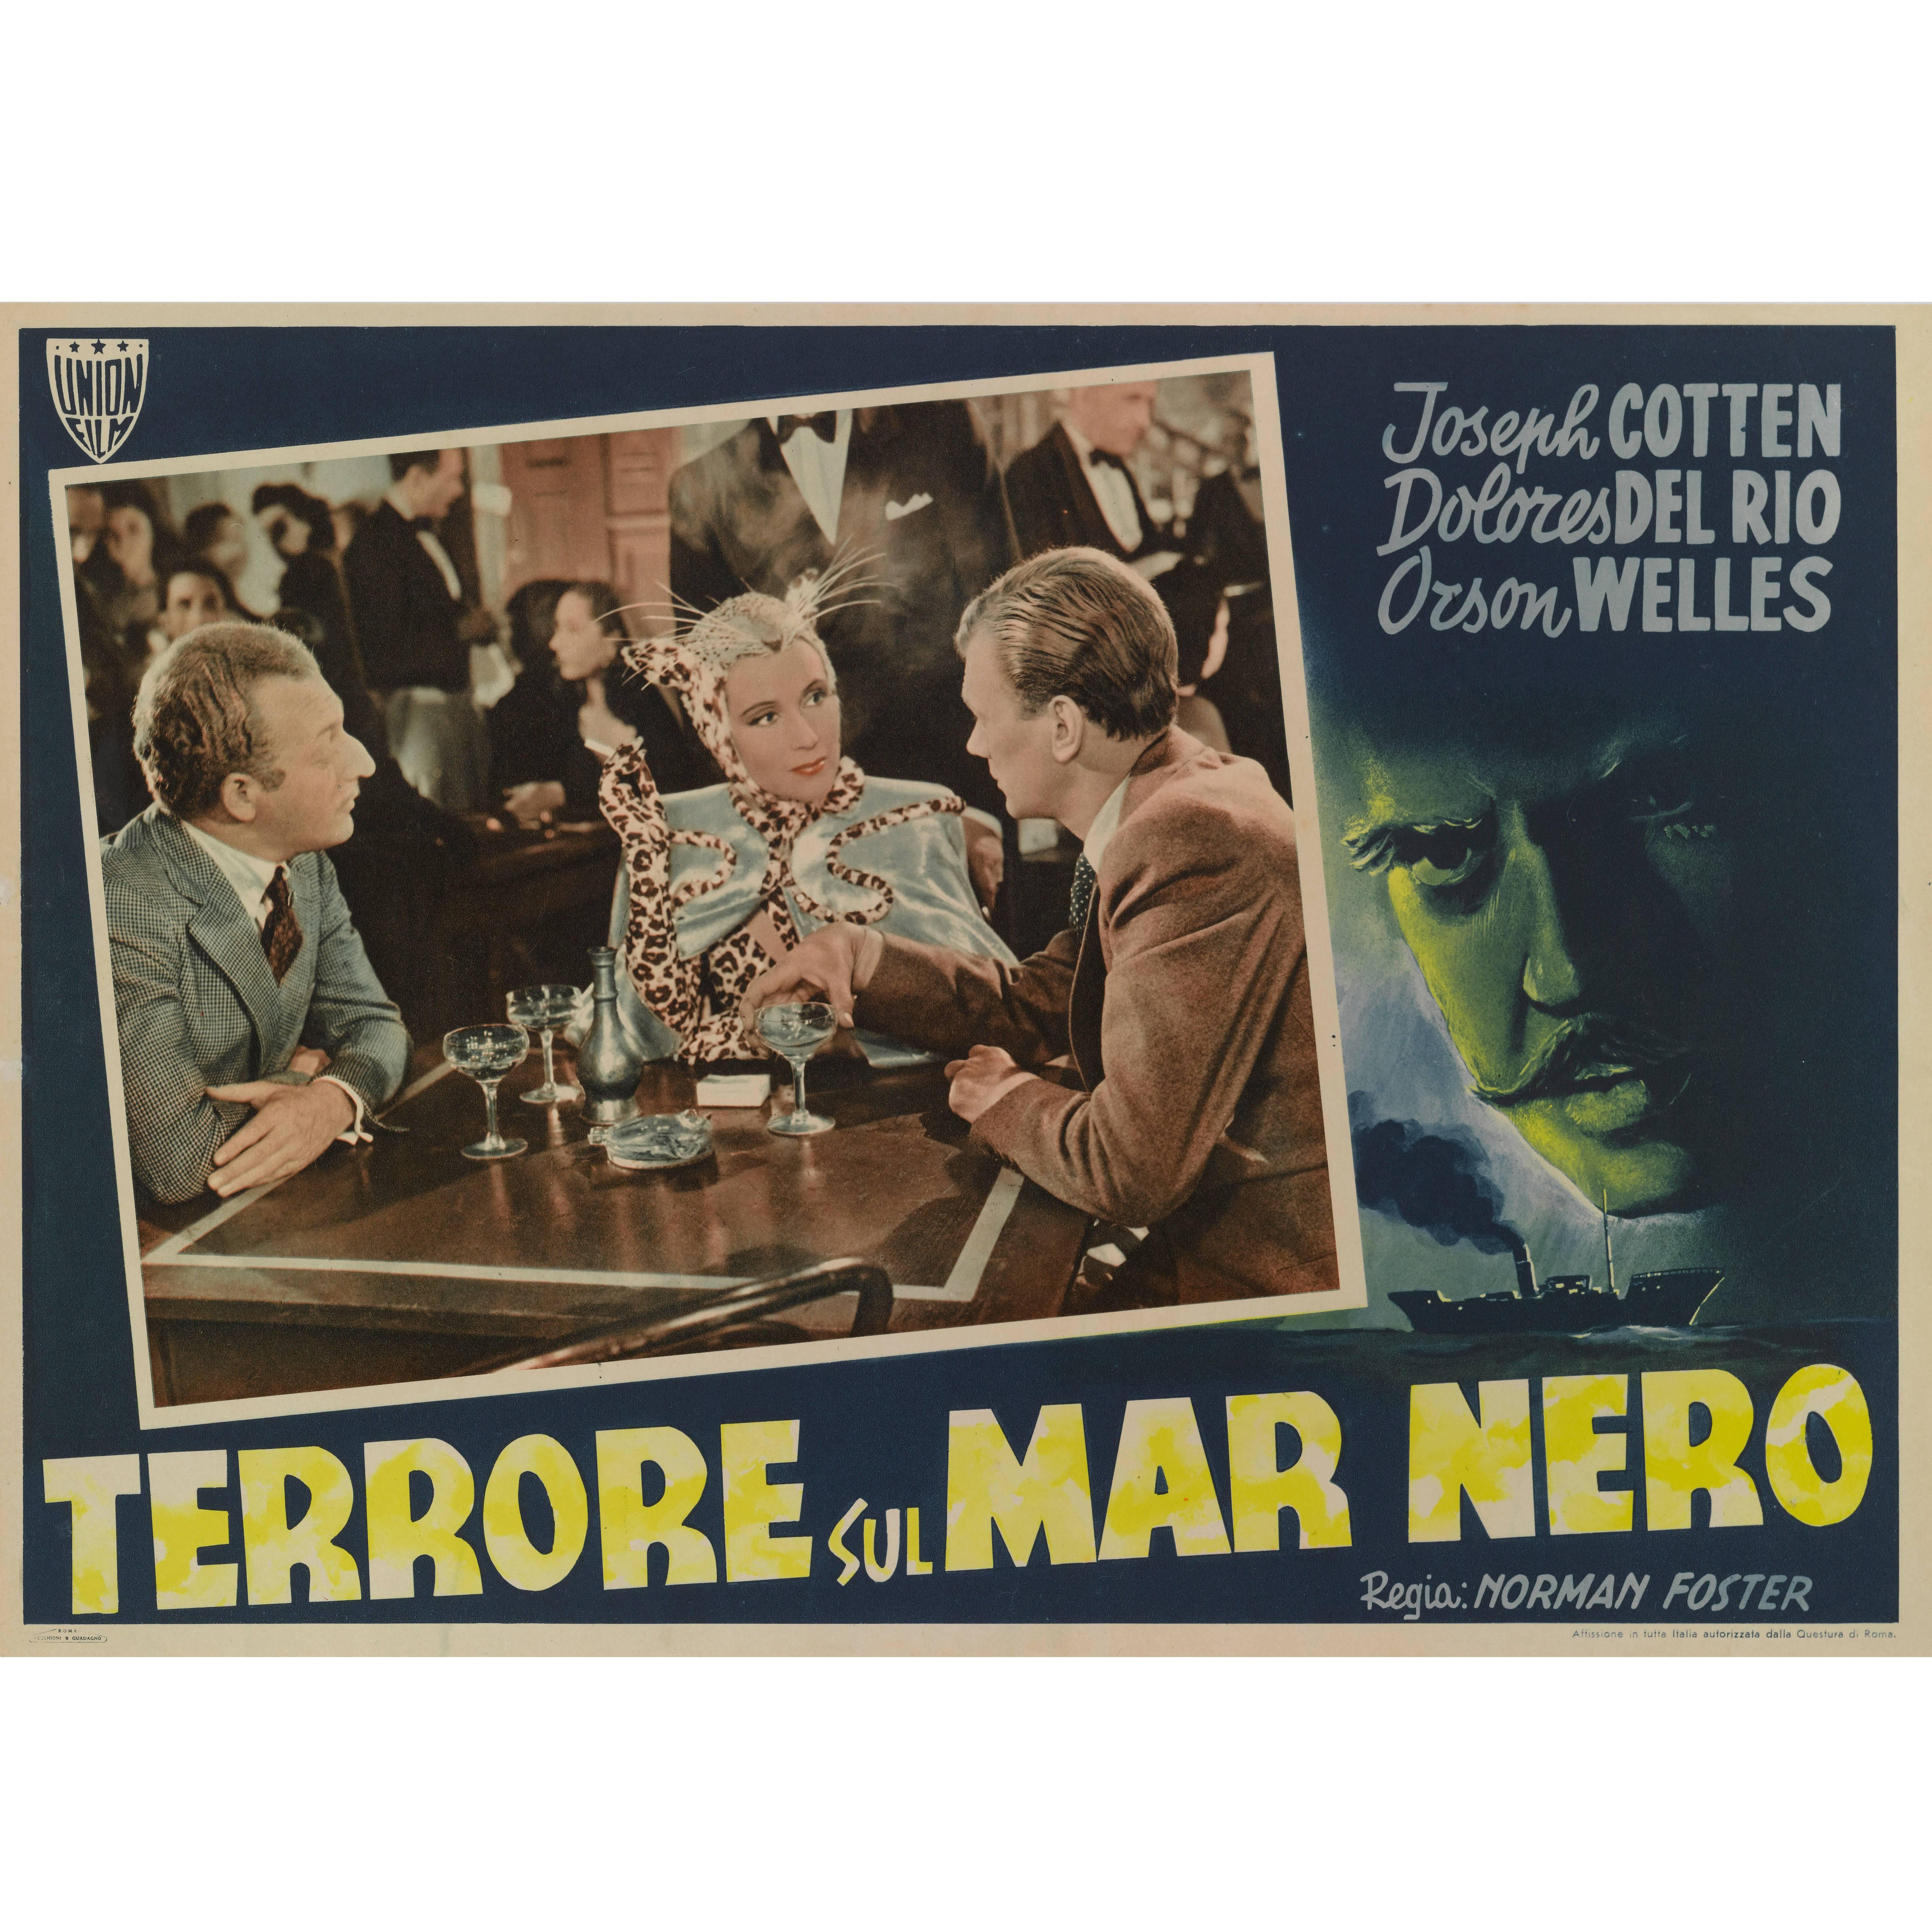 Journey into Fear, Terrore Sul Mar Nero, Original Italian Movie Poster For Sale